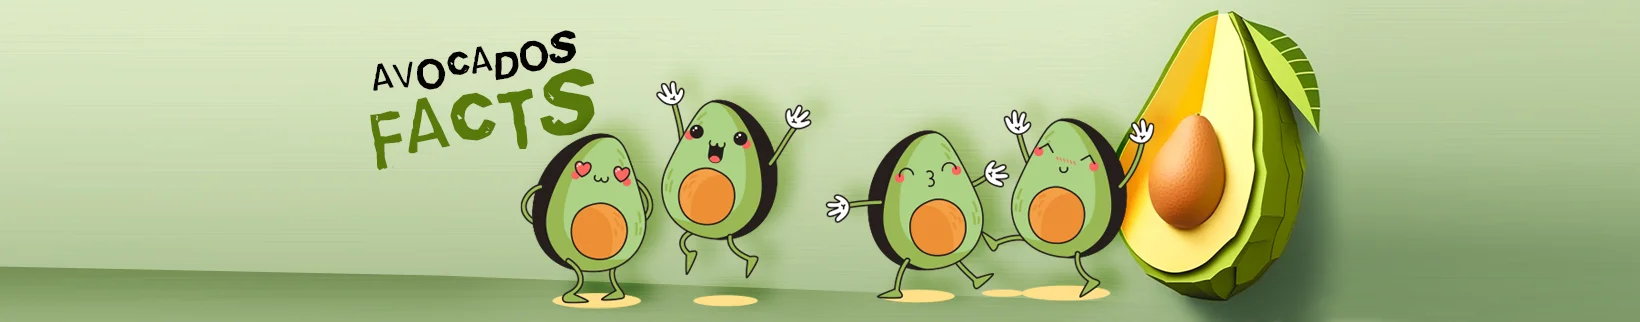 Many avocados in cartoon